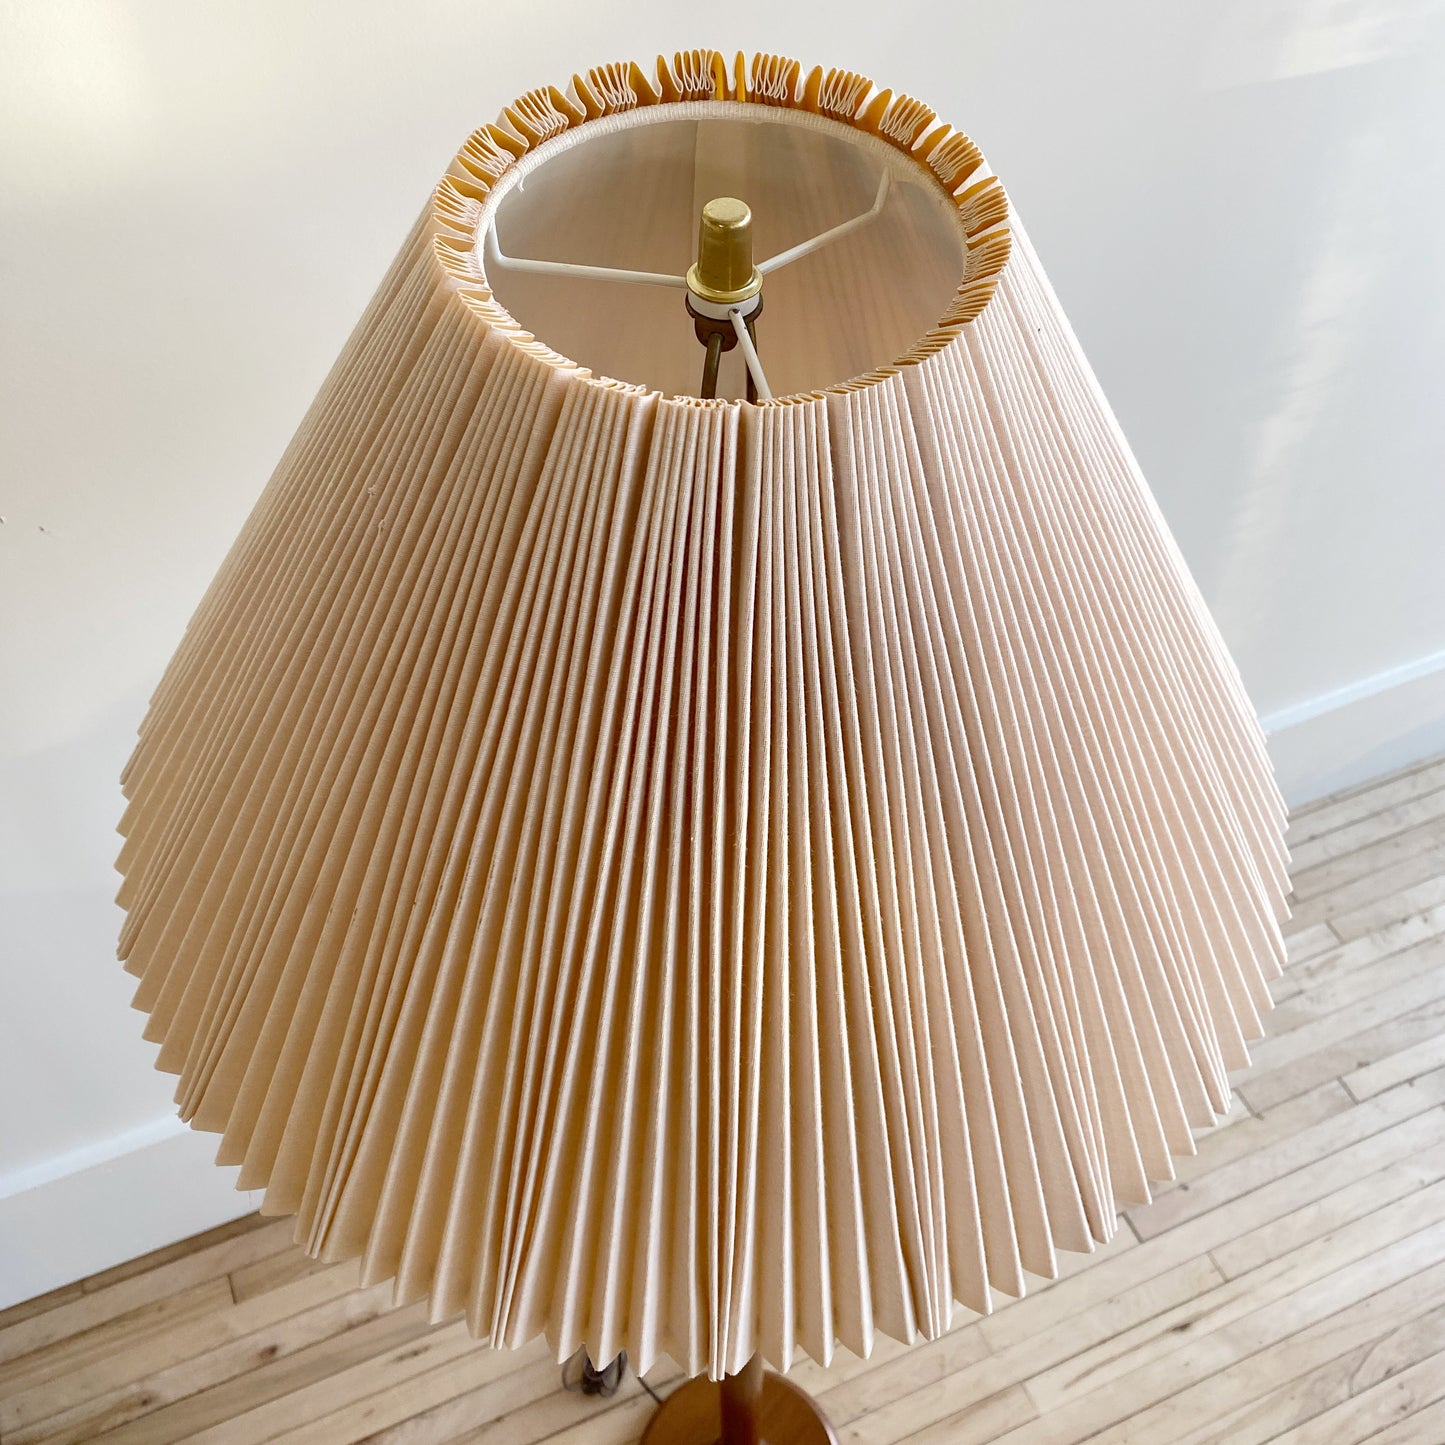 Vintage Teak Floor Lamp with Pleated Shade